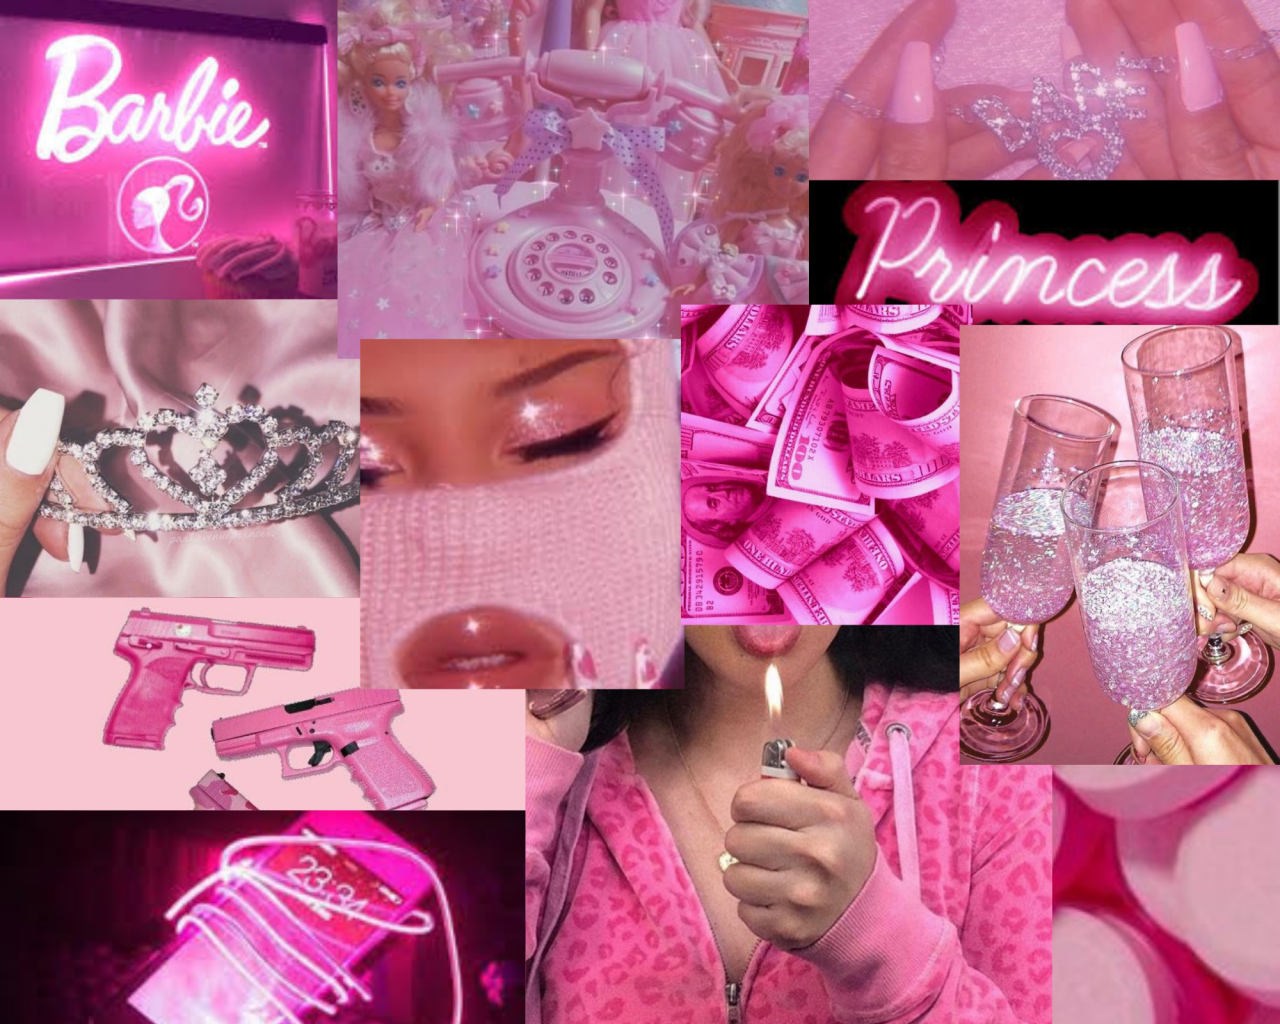 [21+] Barbie Baddie Aesthetic Wallpapers | WallpaperSafari.com